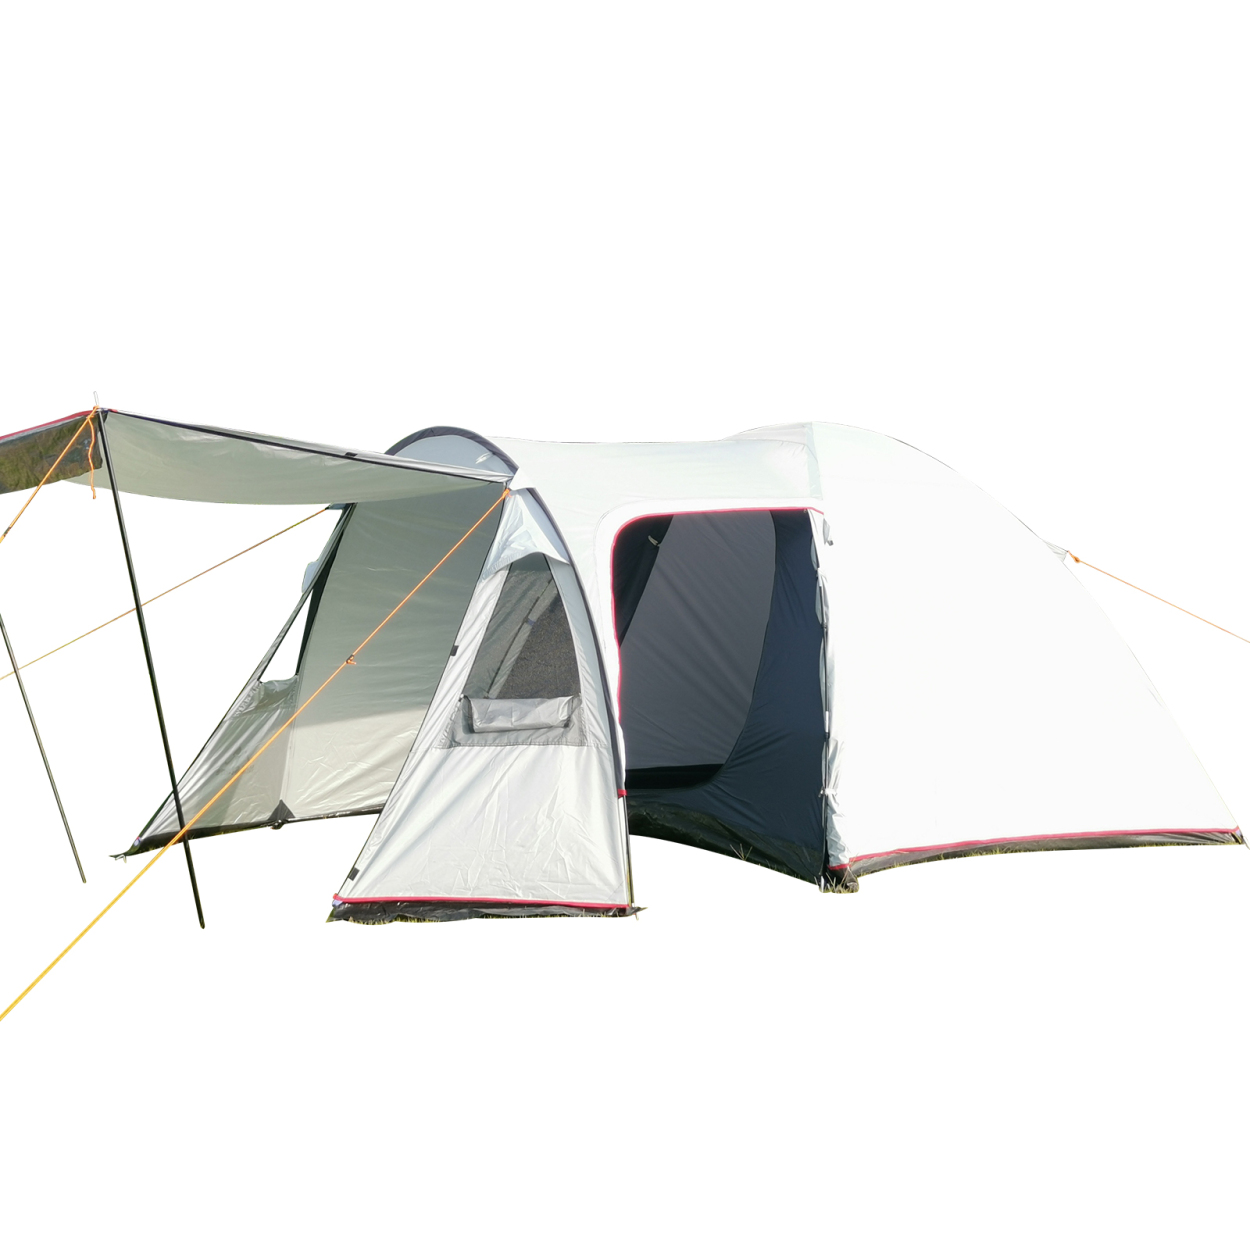 【取寄用品】オールインワン テント キャンプテント 防水 広い ファミリーテント ５人用 テント・タープ